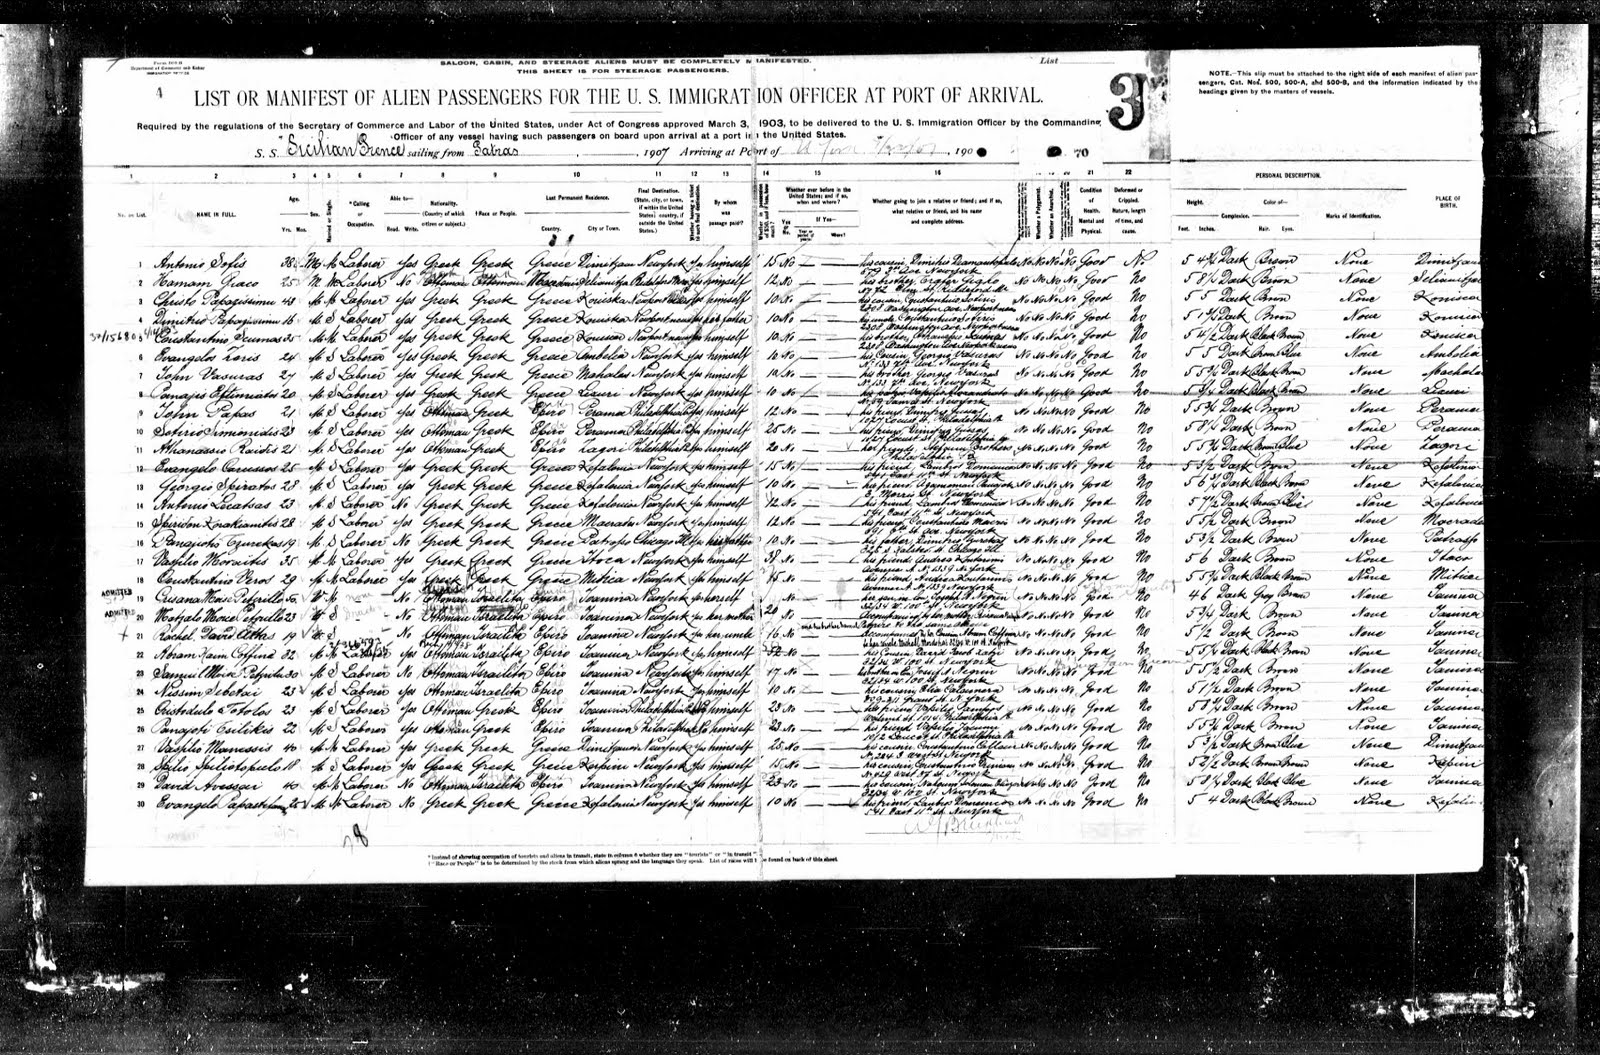 ΠΑΝΑΓΗΣ ΓΕΝΝΑΤΑΣ ΕΥΘΥΜΙΑΤΟΣ (PANAGIS G. EFTHIMIATOS) BORN 1886- NEW YORK, CALIFORNIA LISTA+EPIVIVASHS